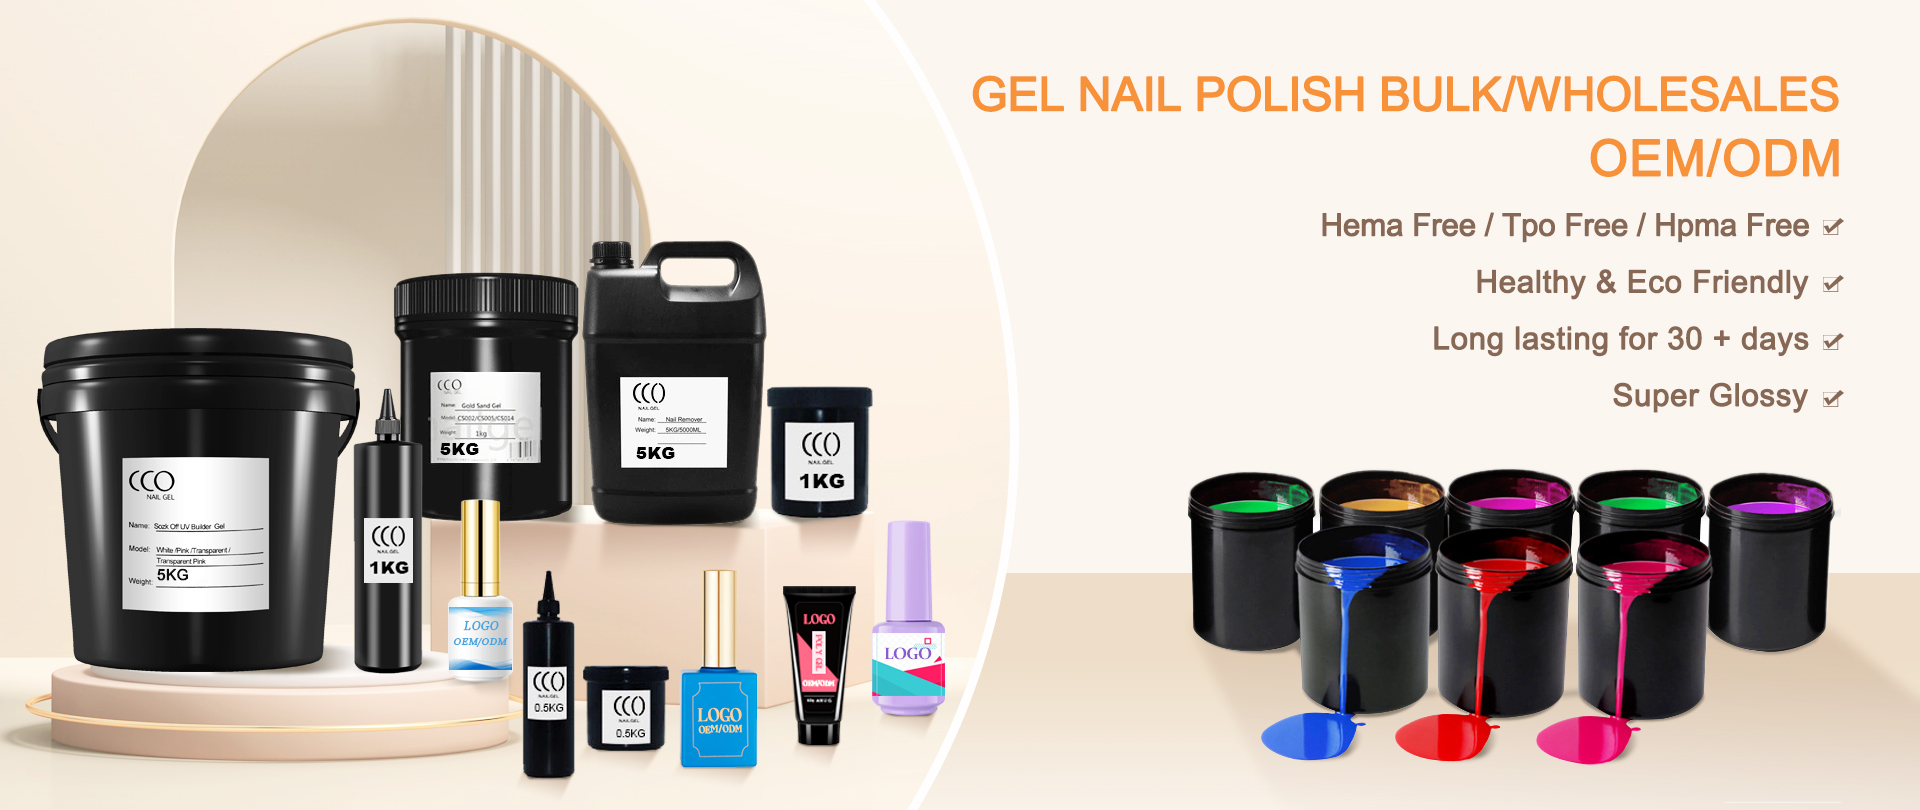 OEM serive nail gel bulk or wholesales